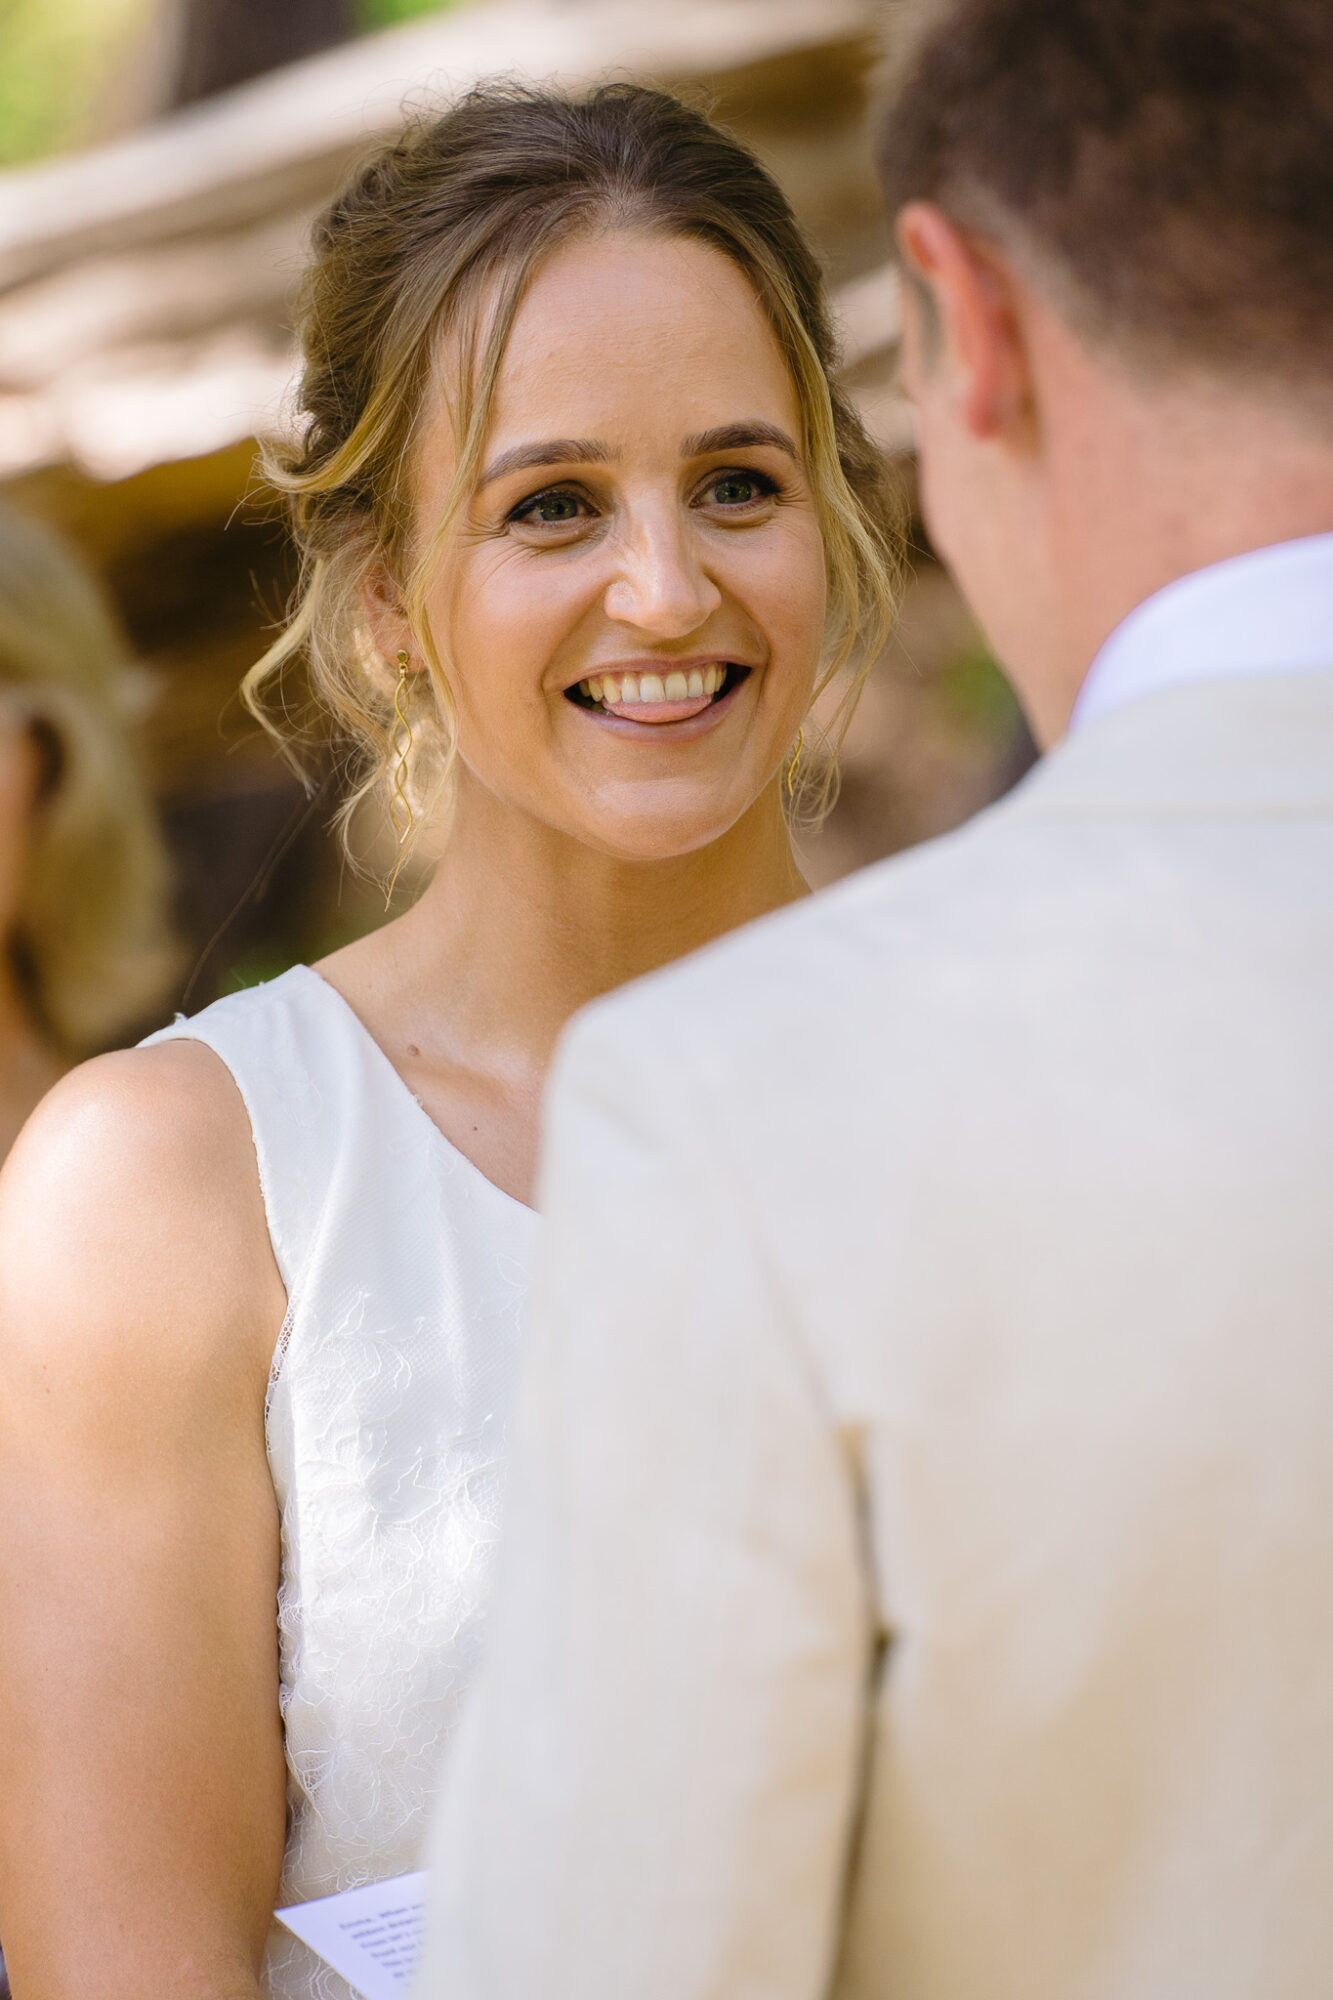 Huwelijk destination wedding perth australia trouwen in het buitenland 31